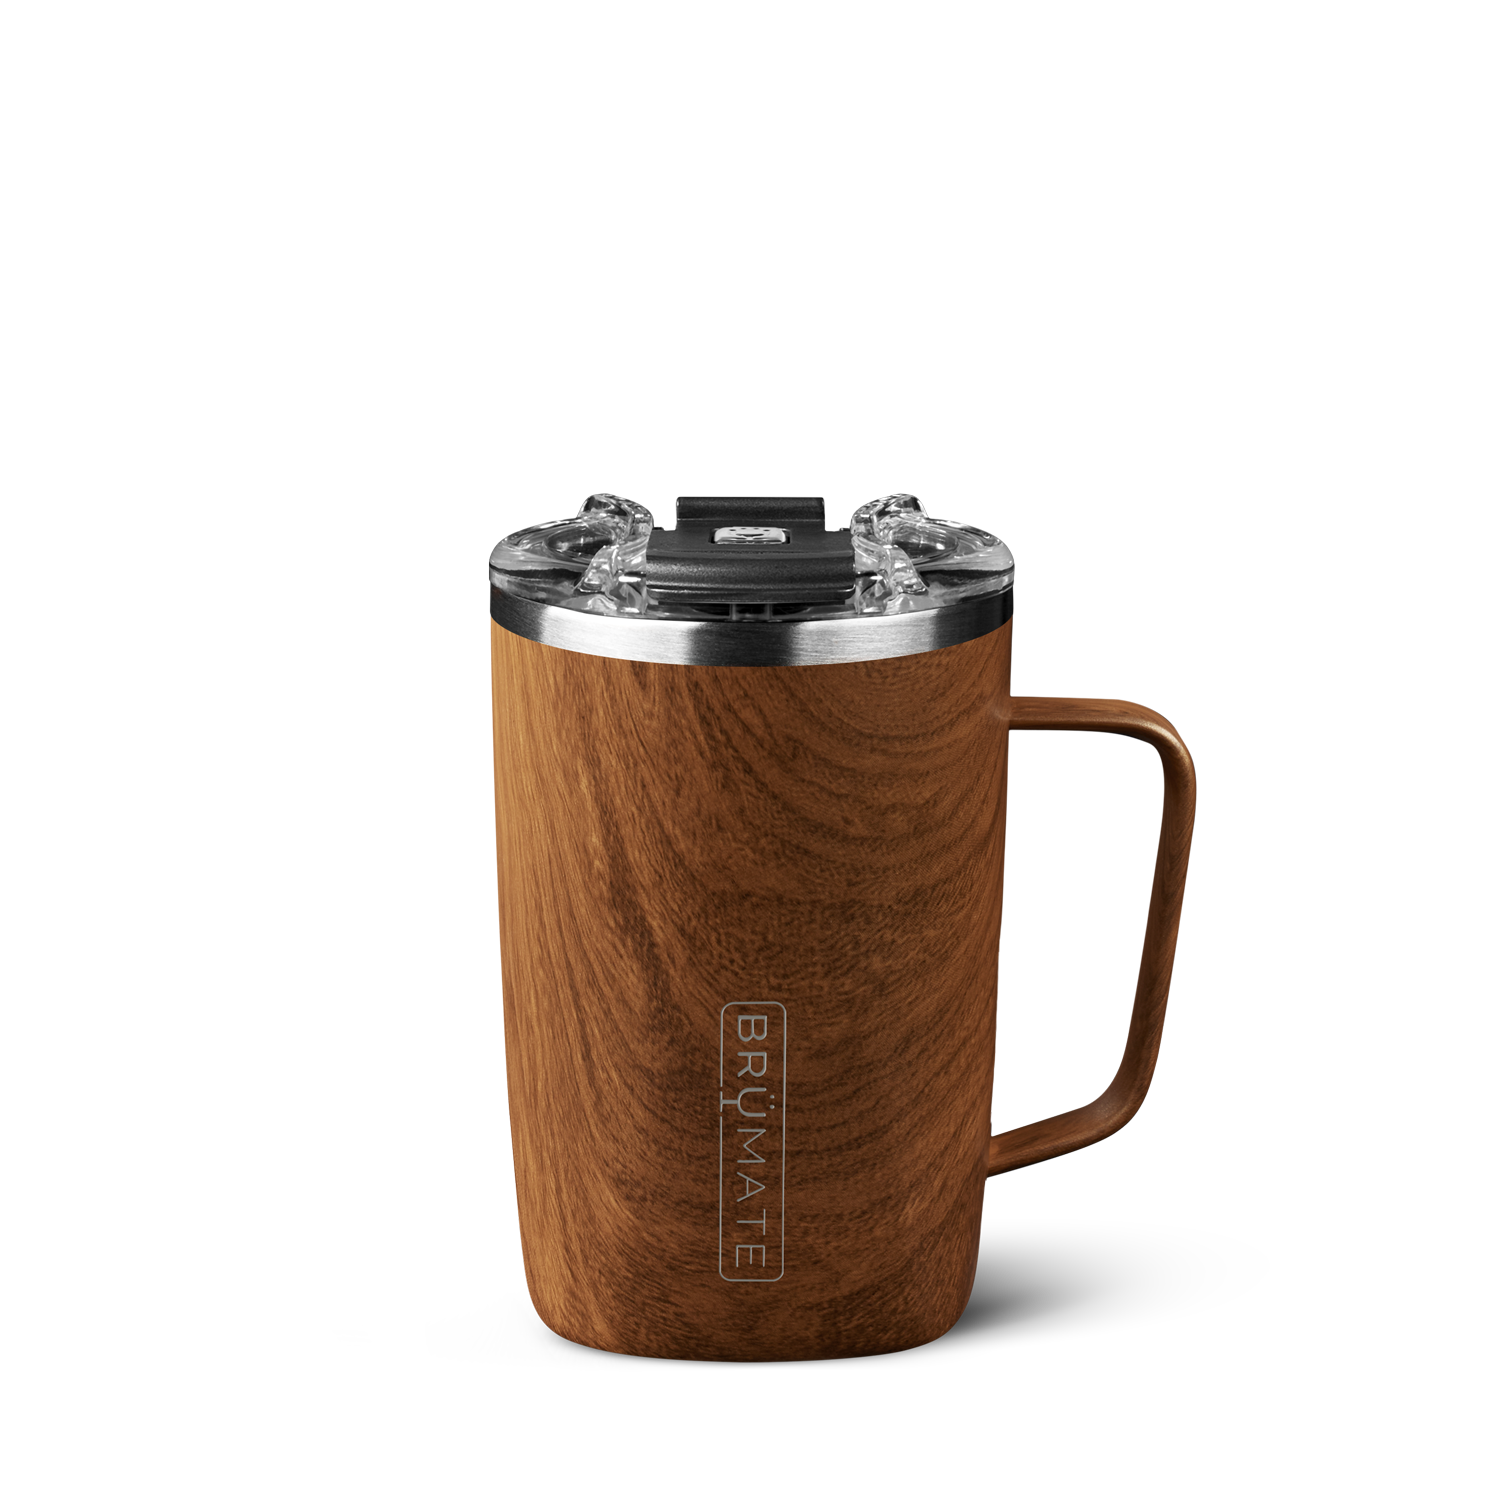 BruMate - XL Toddy Mug - Walnut